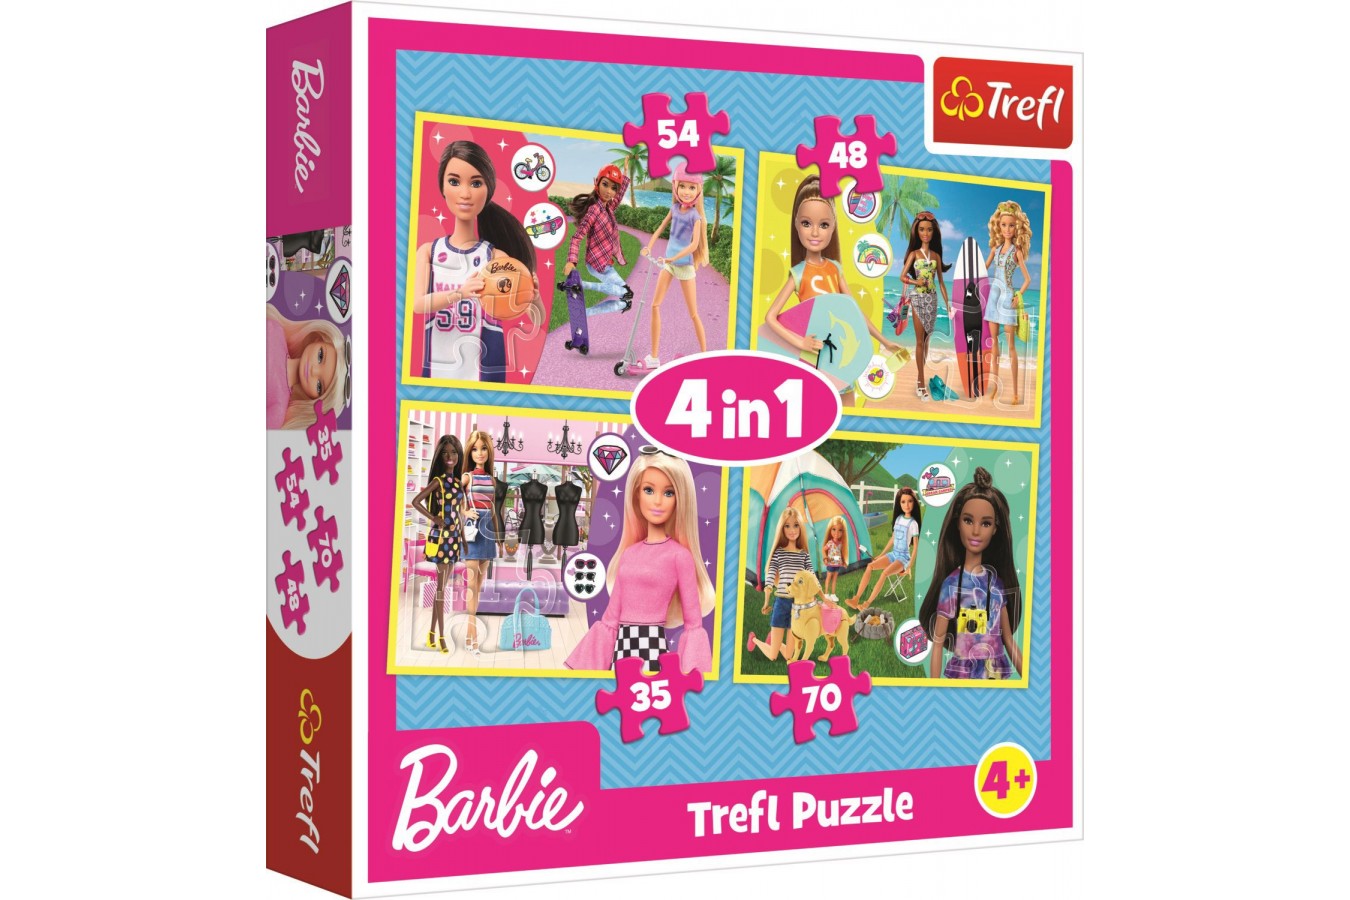 Puzzle Trefl - Barbie, 35/48/54/70 piese (34333) imagine